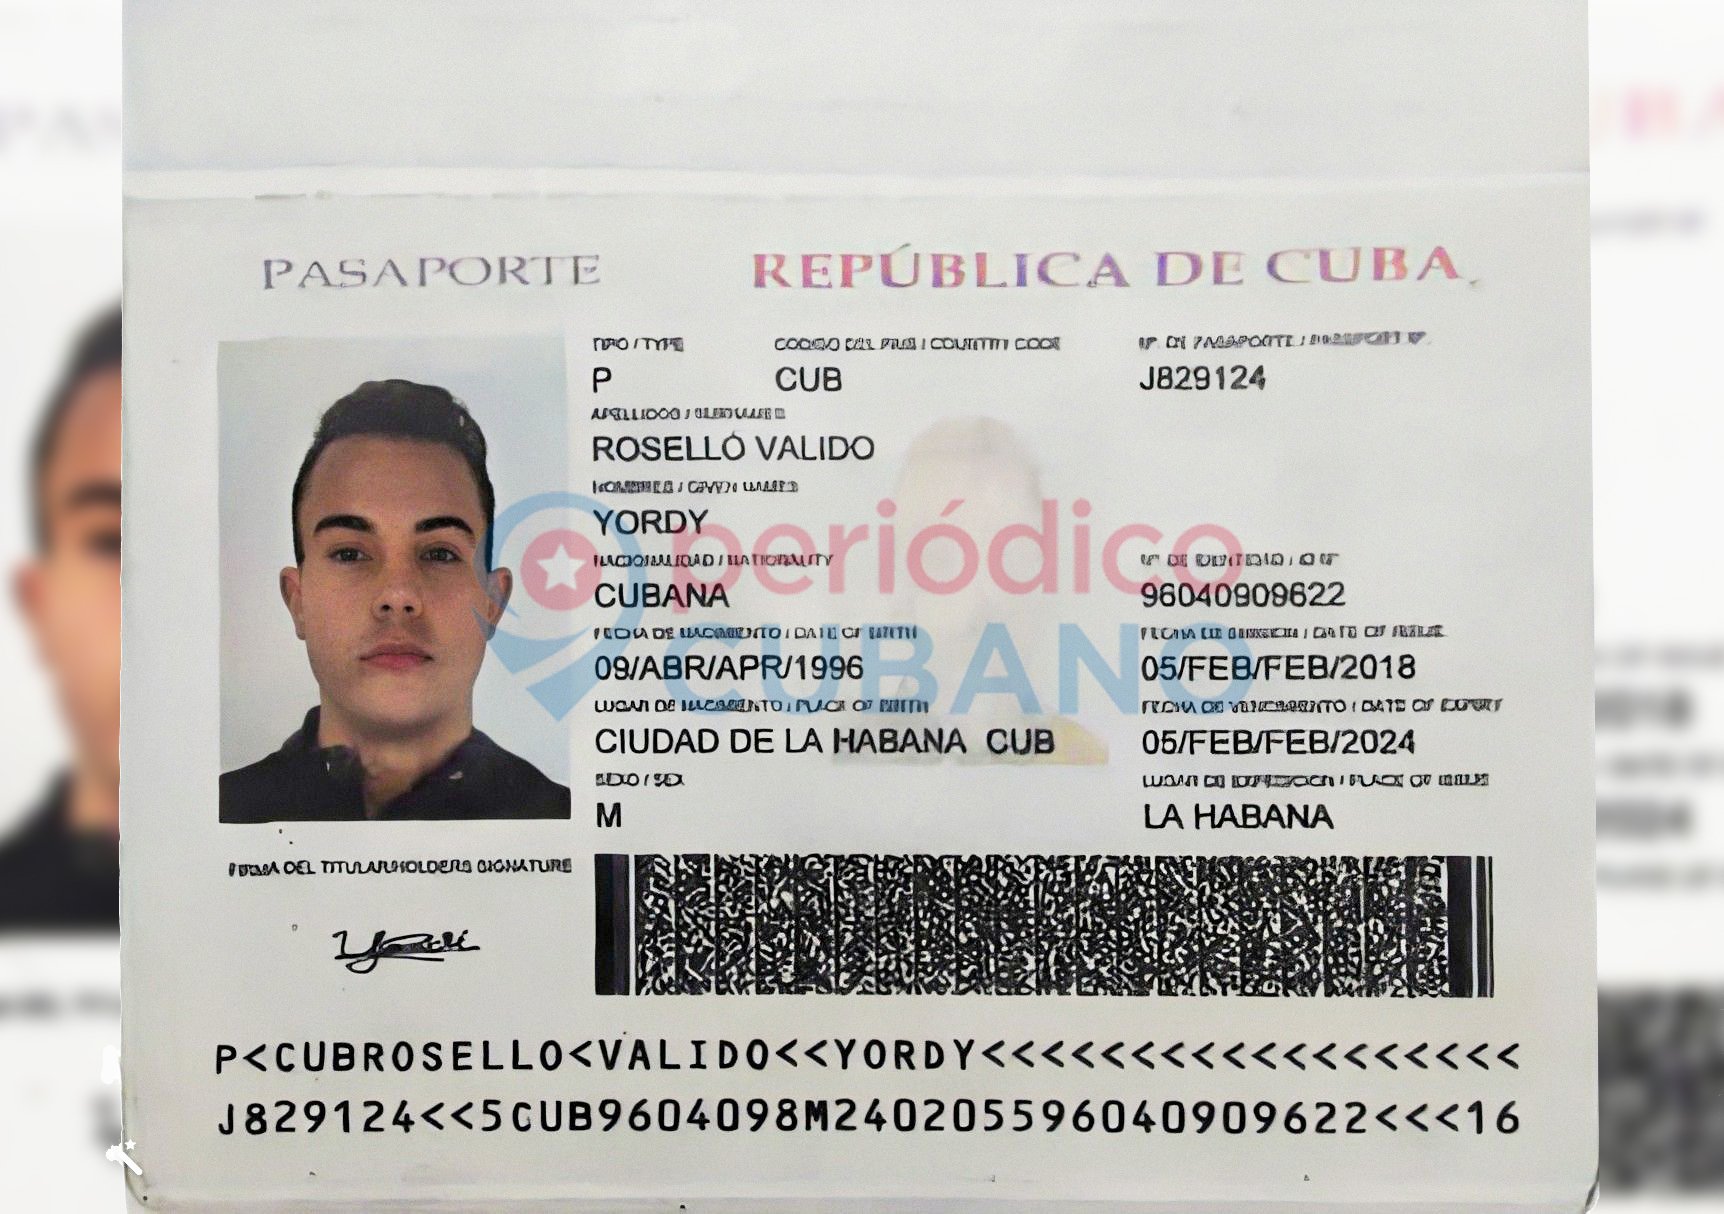 Joven cubano pide ayuda para poder encontrar su pasaporte extraviado desde hace días